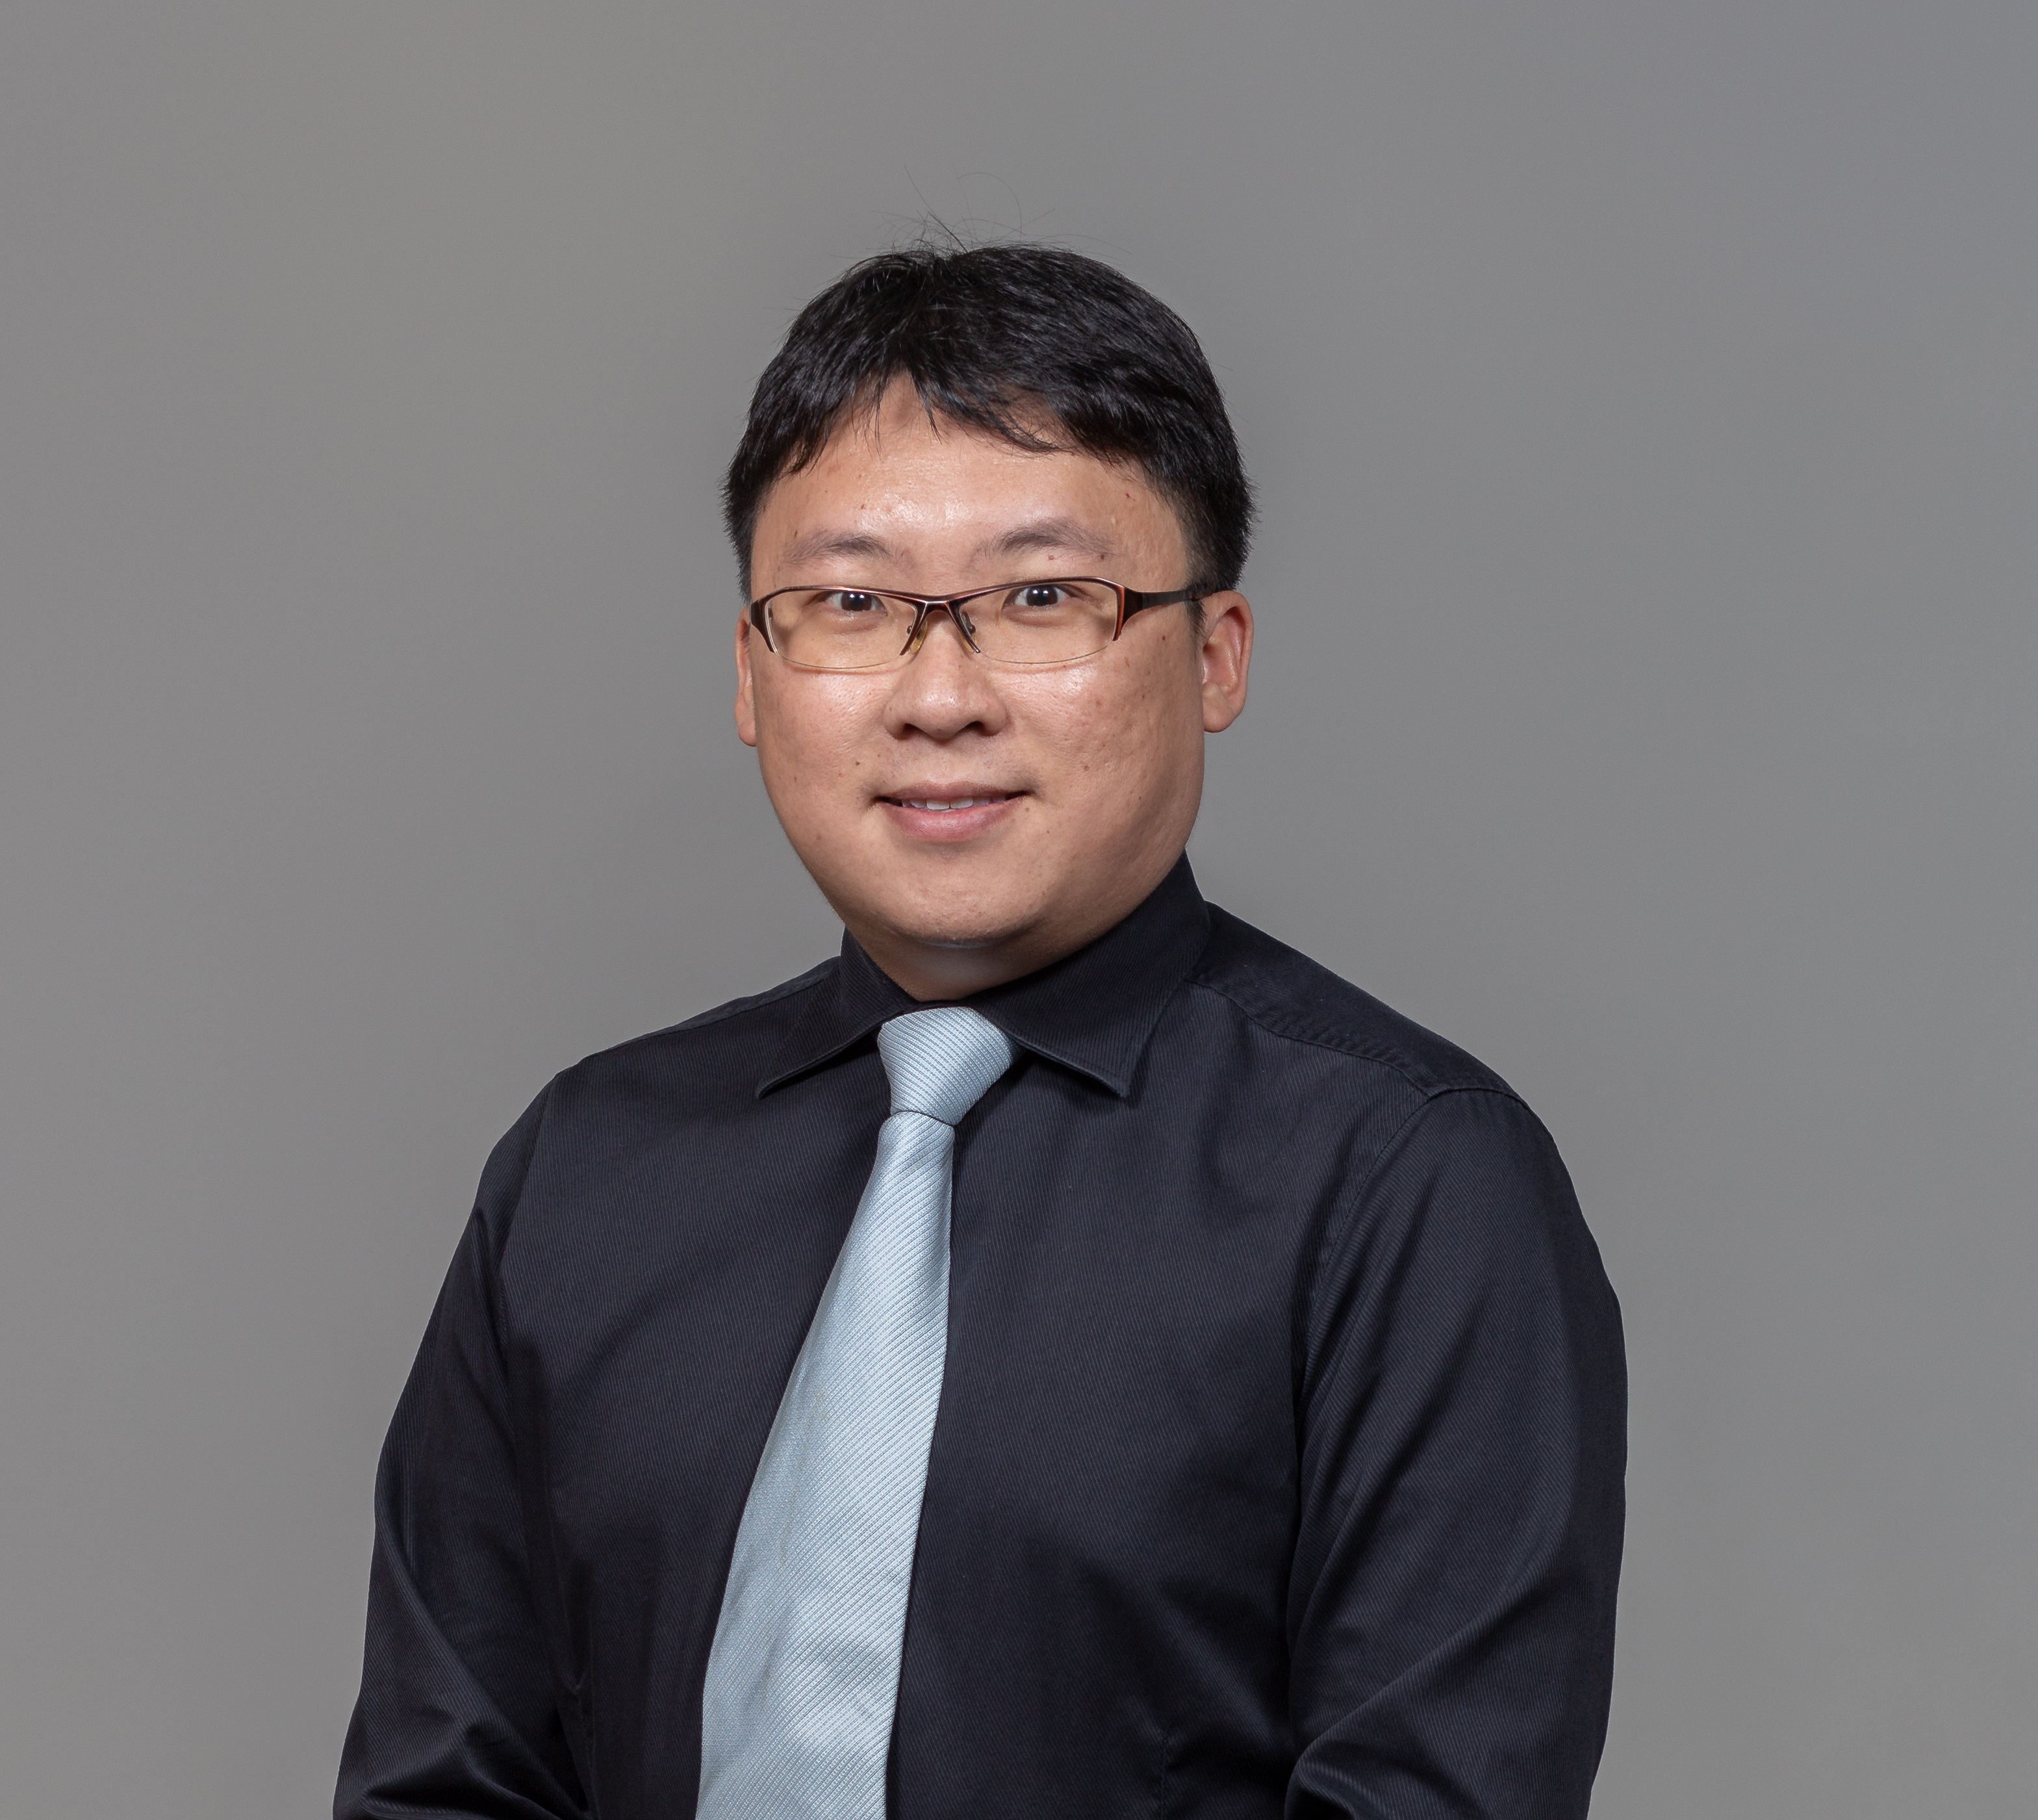 Dr Wong Yong Kang